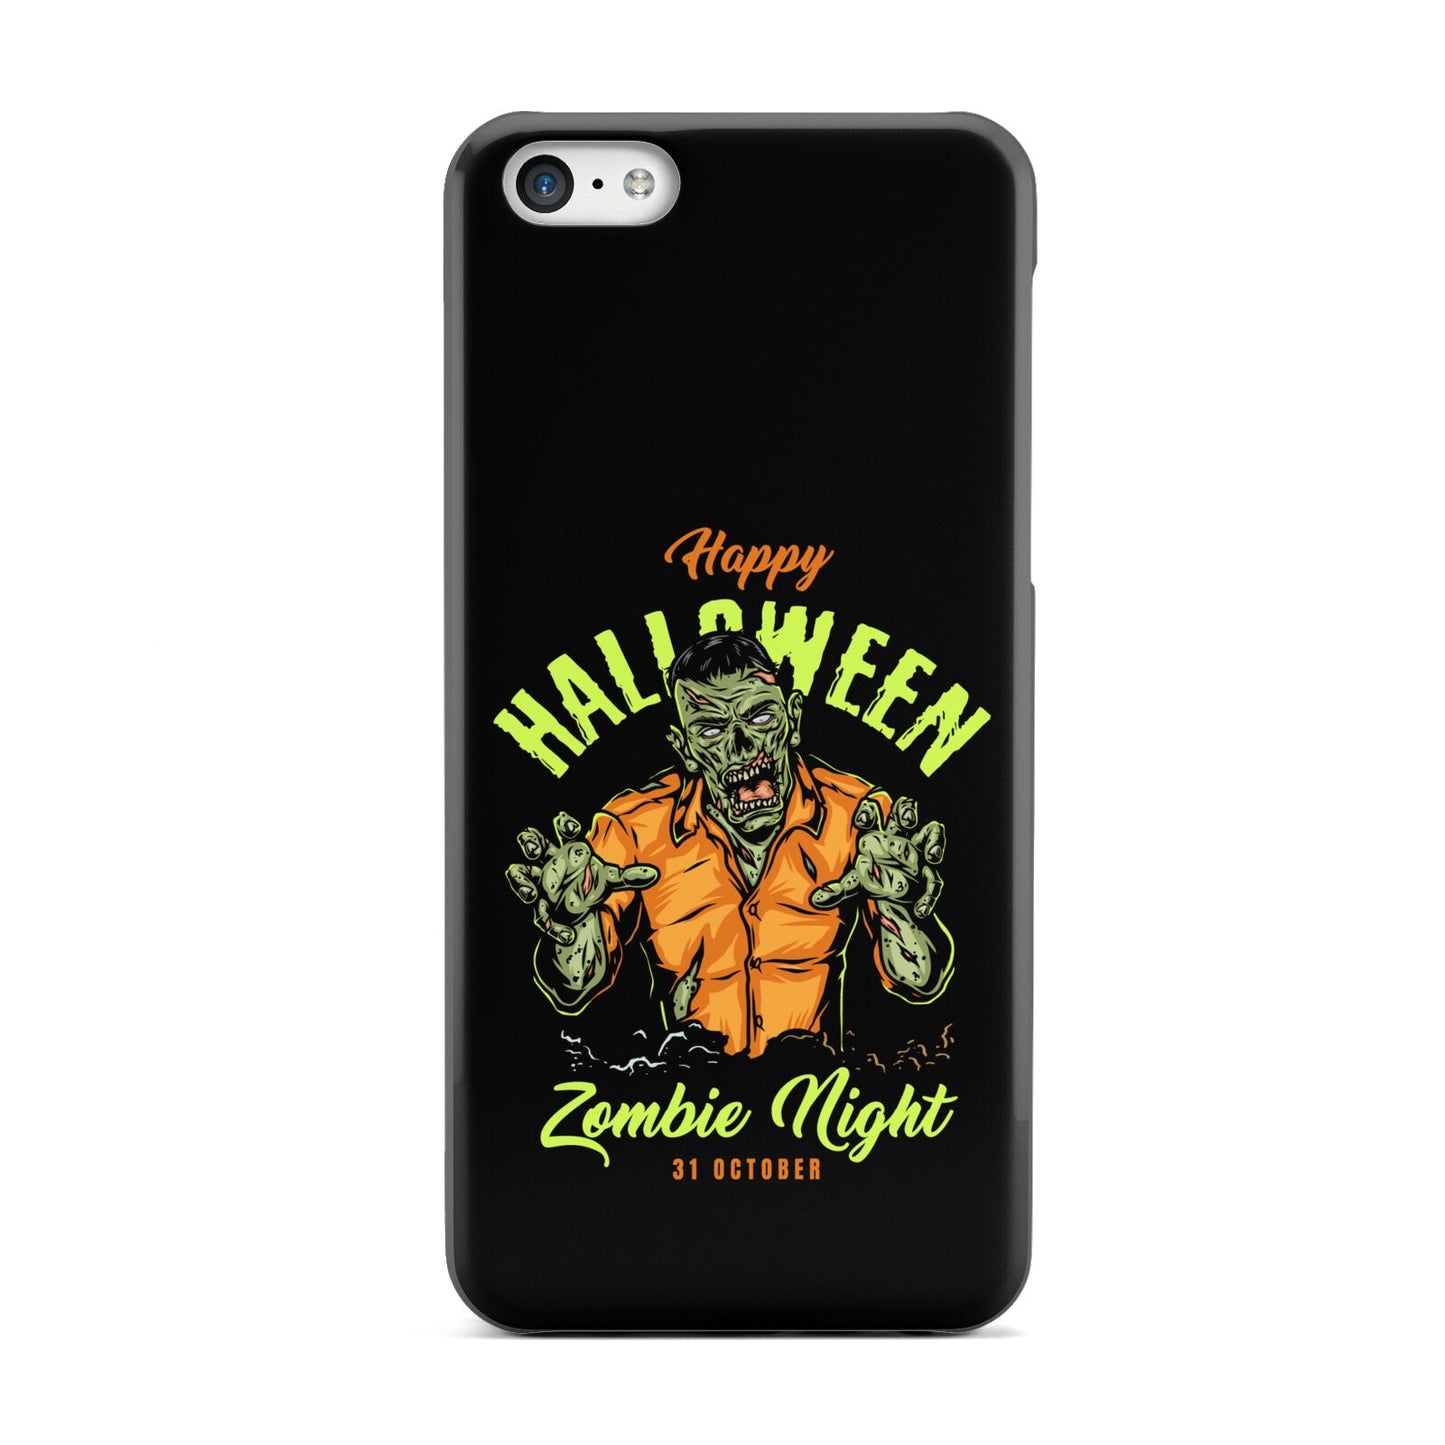 Zombie Apple iPhone 5c Case